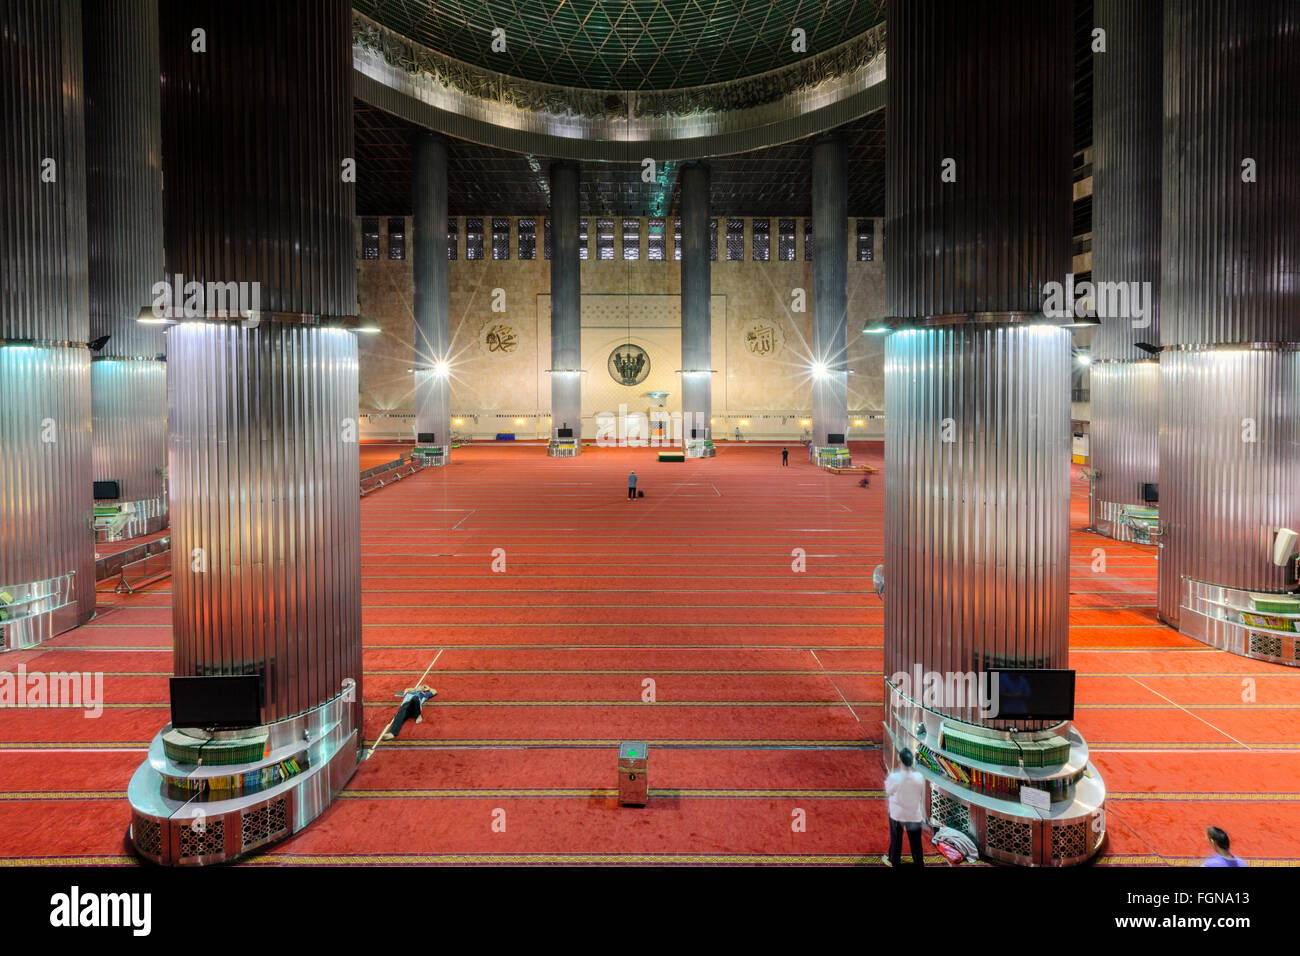 Intérieur de la salle de prière de la Mosquée Istiqlal, ou Mosquée Istiqlal, à Jakarta - la plus grande mosquée d'Asie du sud-est Banque D'Images